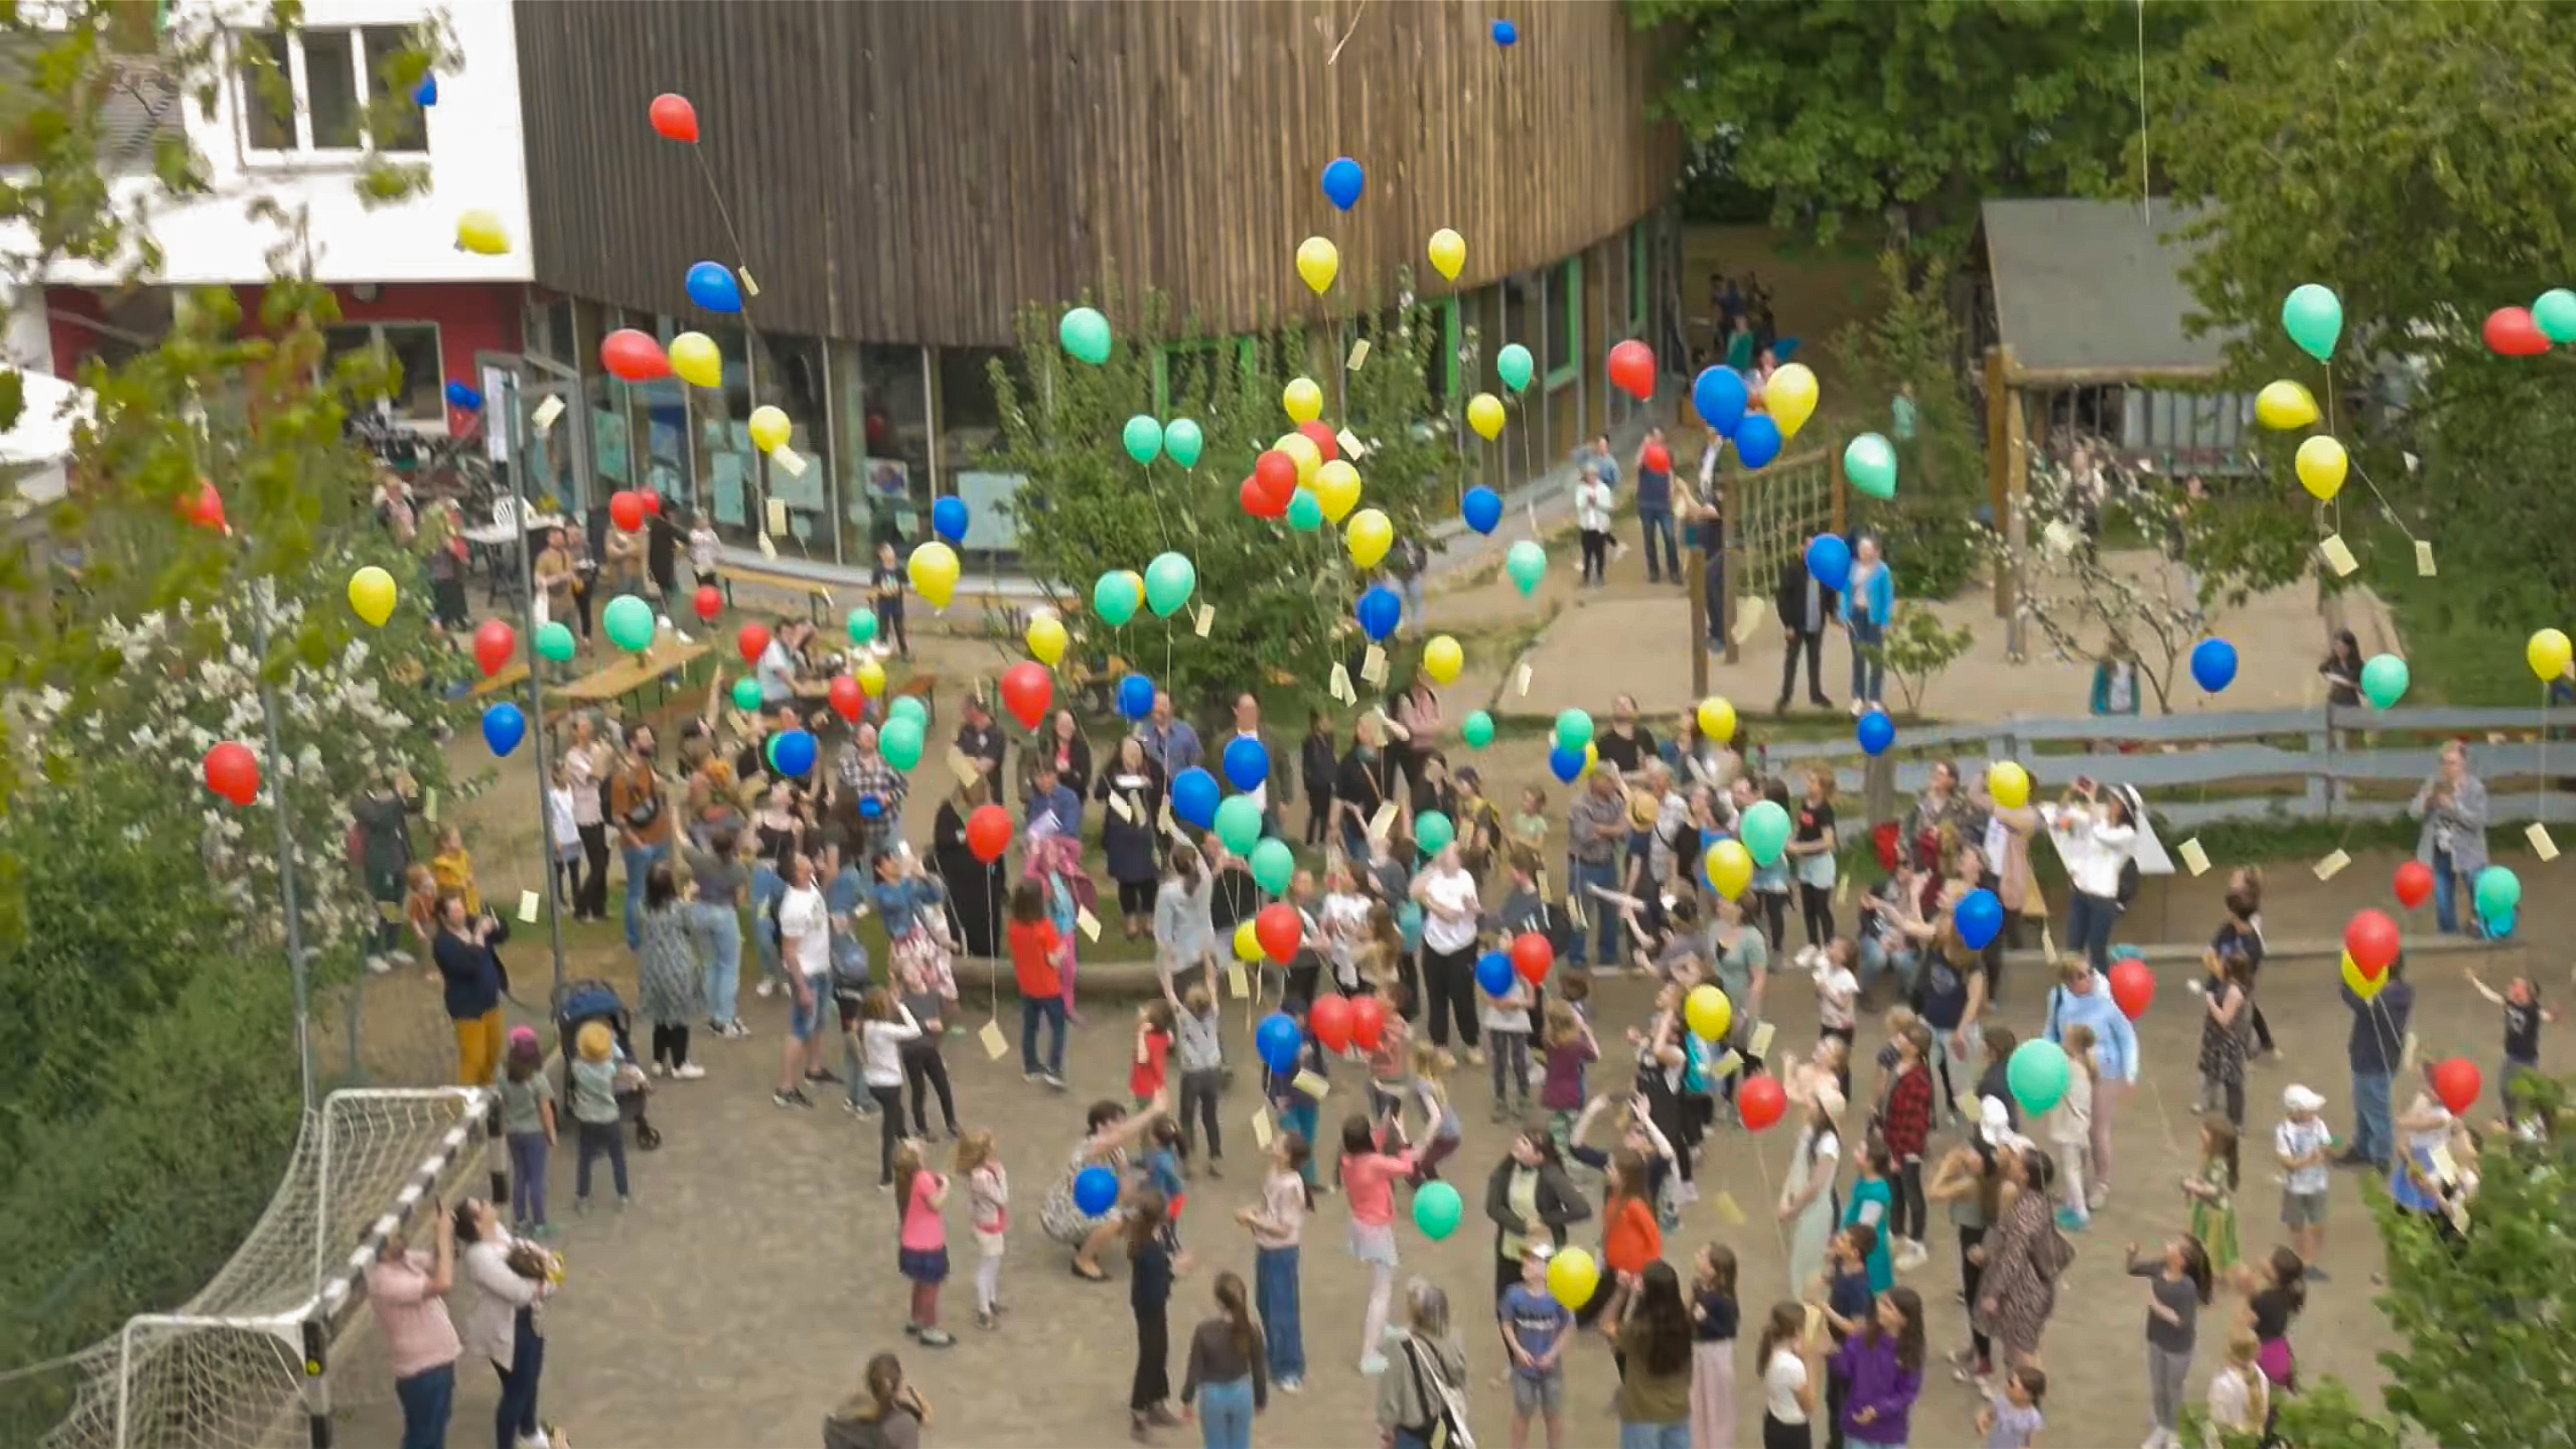 Menschenmenge am eva schulze mtl mit Luftballons by Nelson Ptak